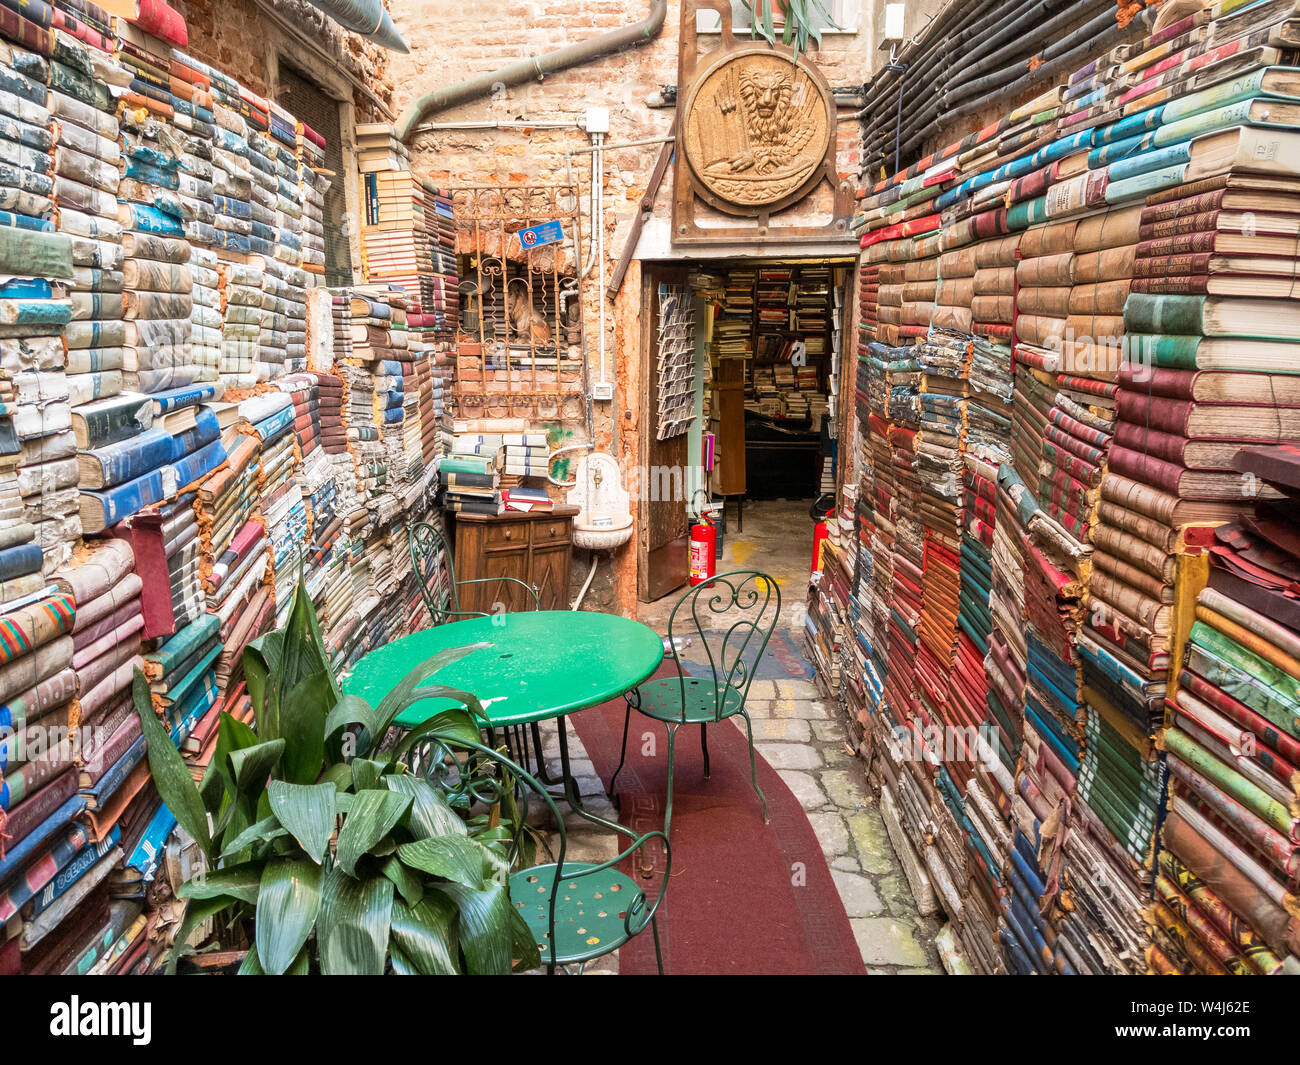 Libreria Acqua Alta in Venice, Italy Stock Photo - Alamy